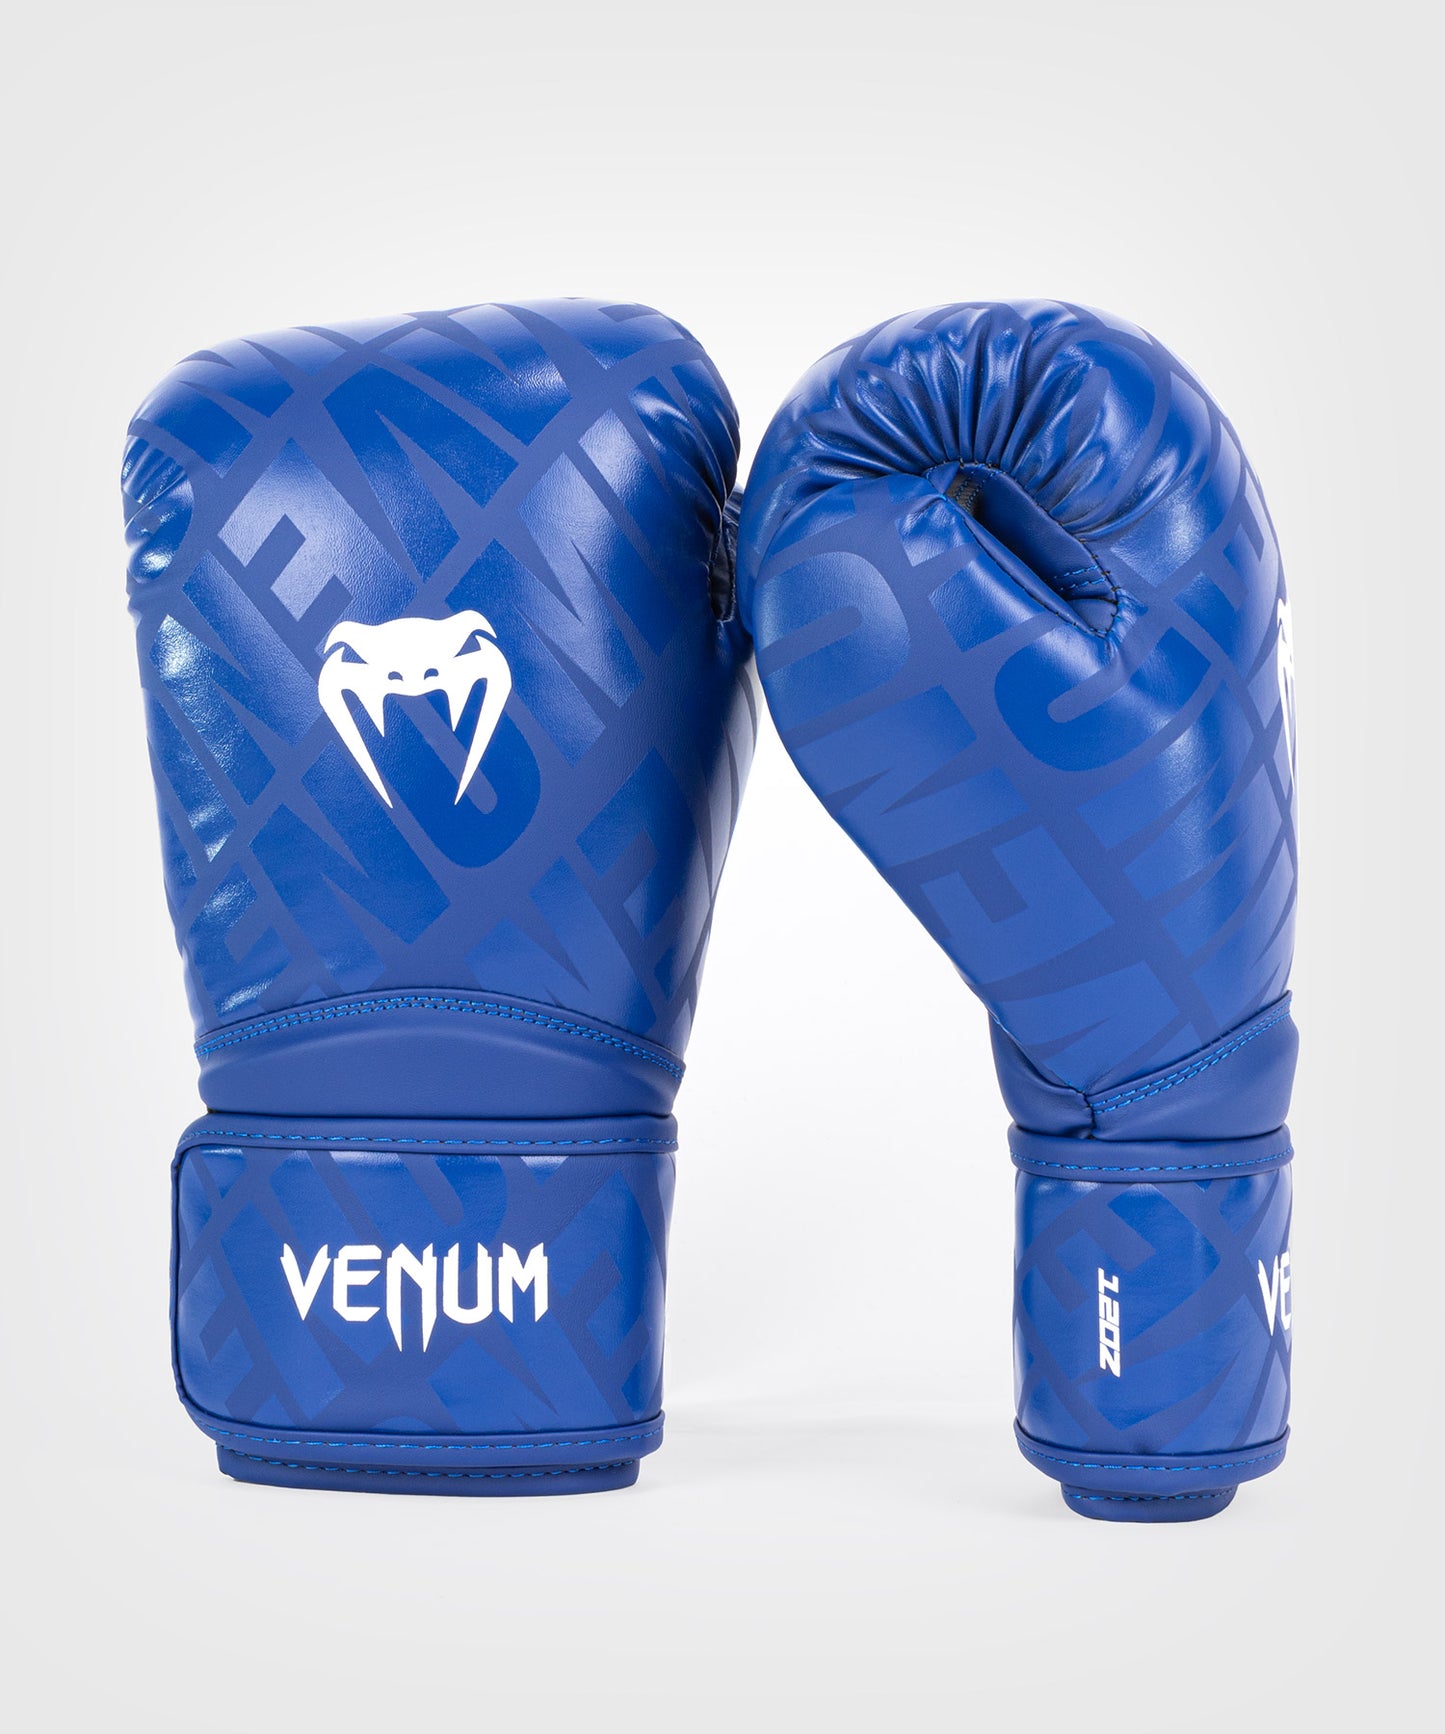 Venum Contender 1.5 XT Boxhandschuhe - Weiß/Blau